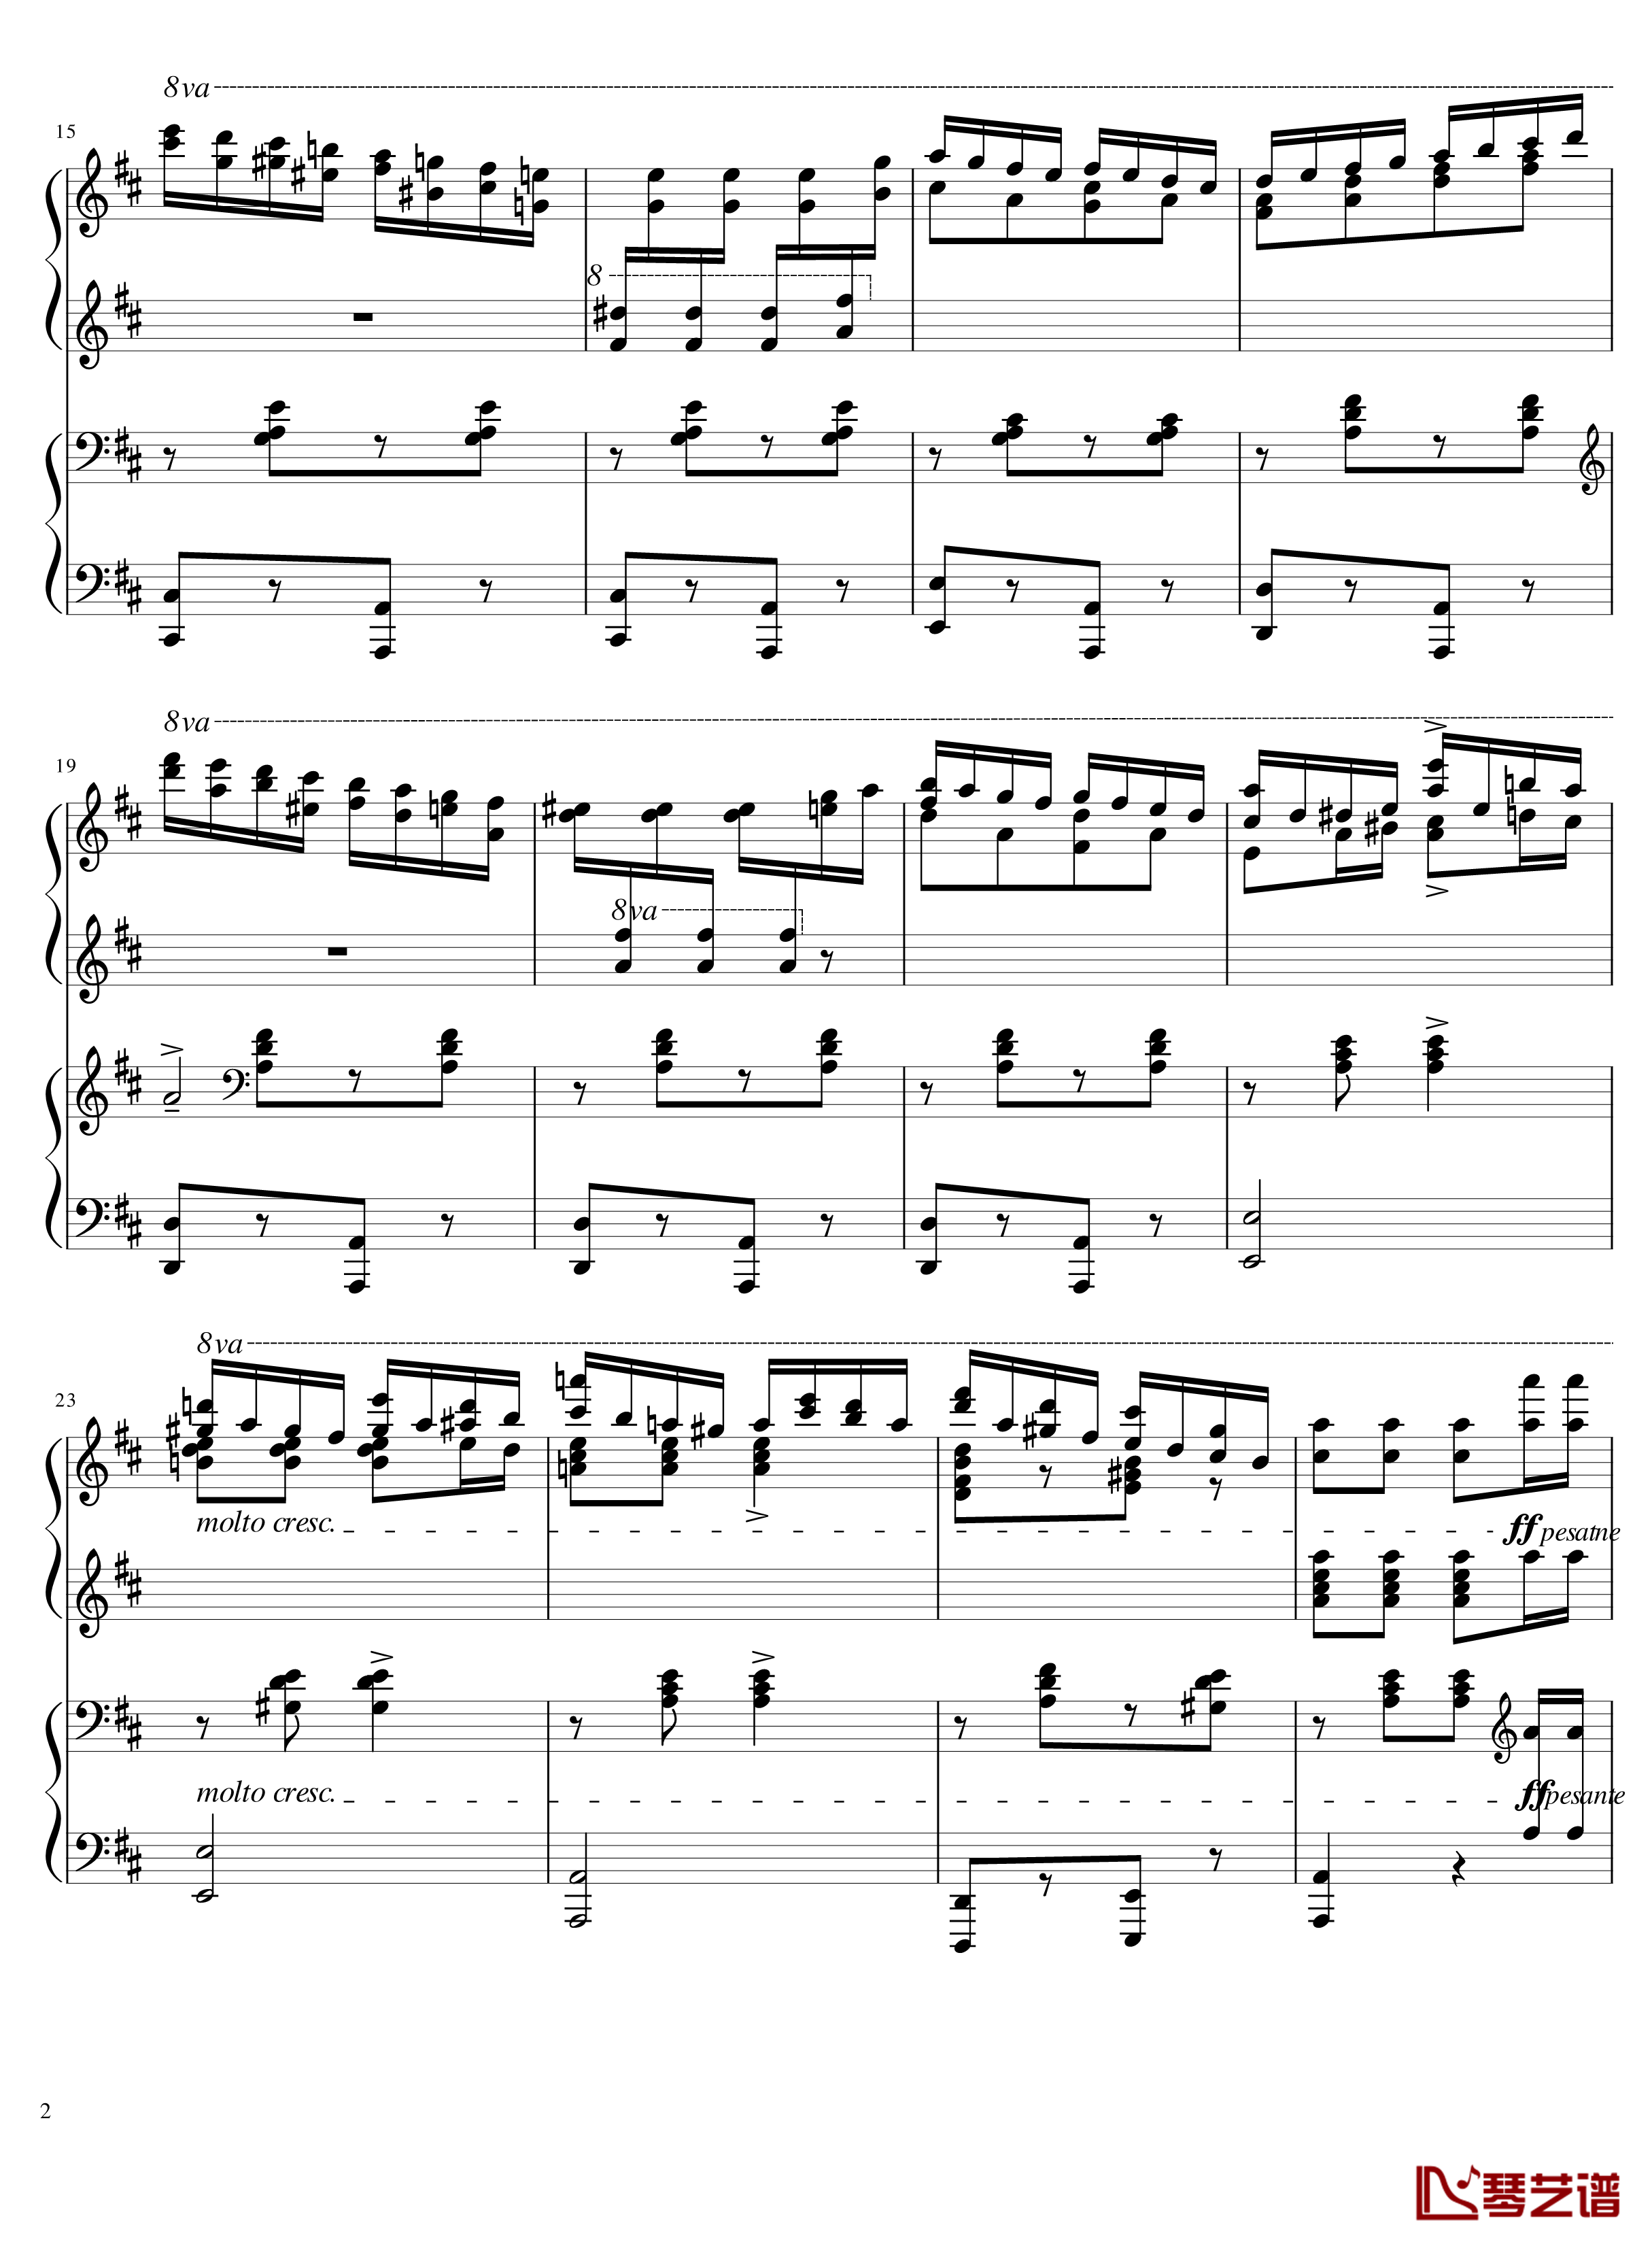 Italian Polka钢琴谱-意大利波尔卡-拉赫马尼若夫2